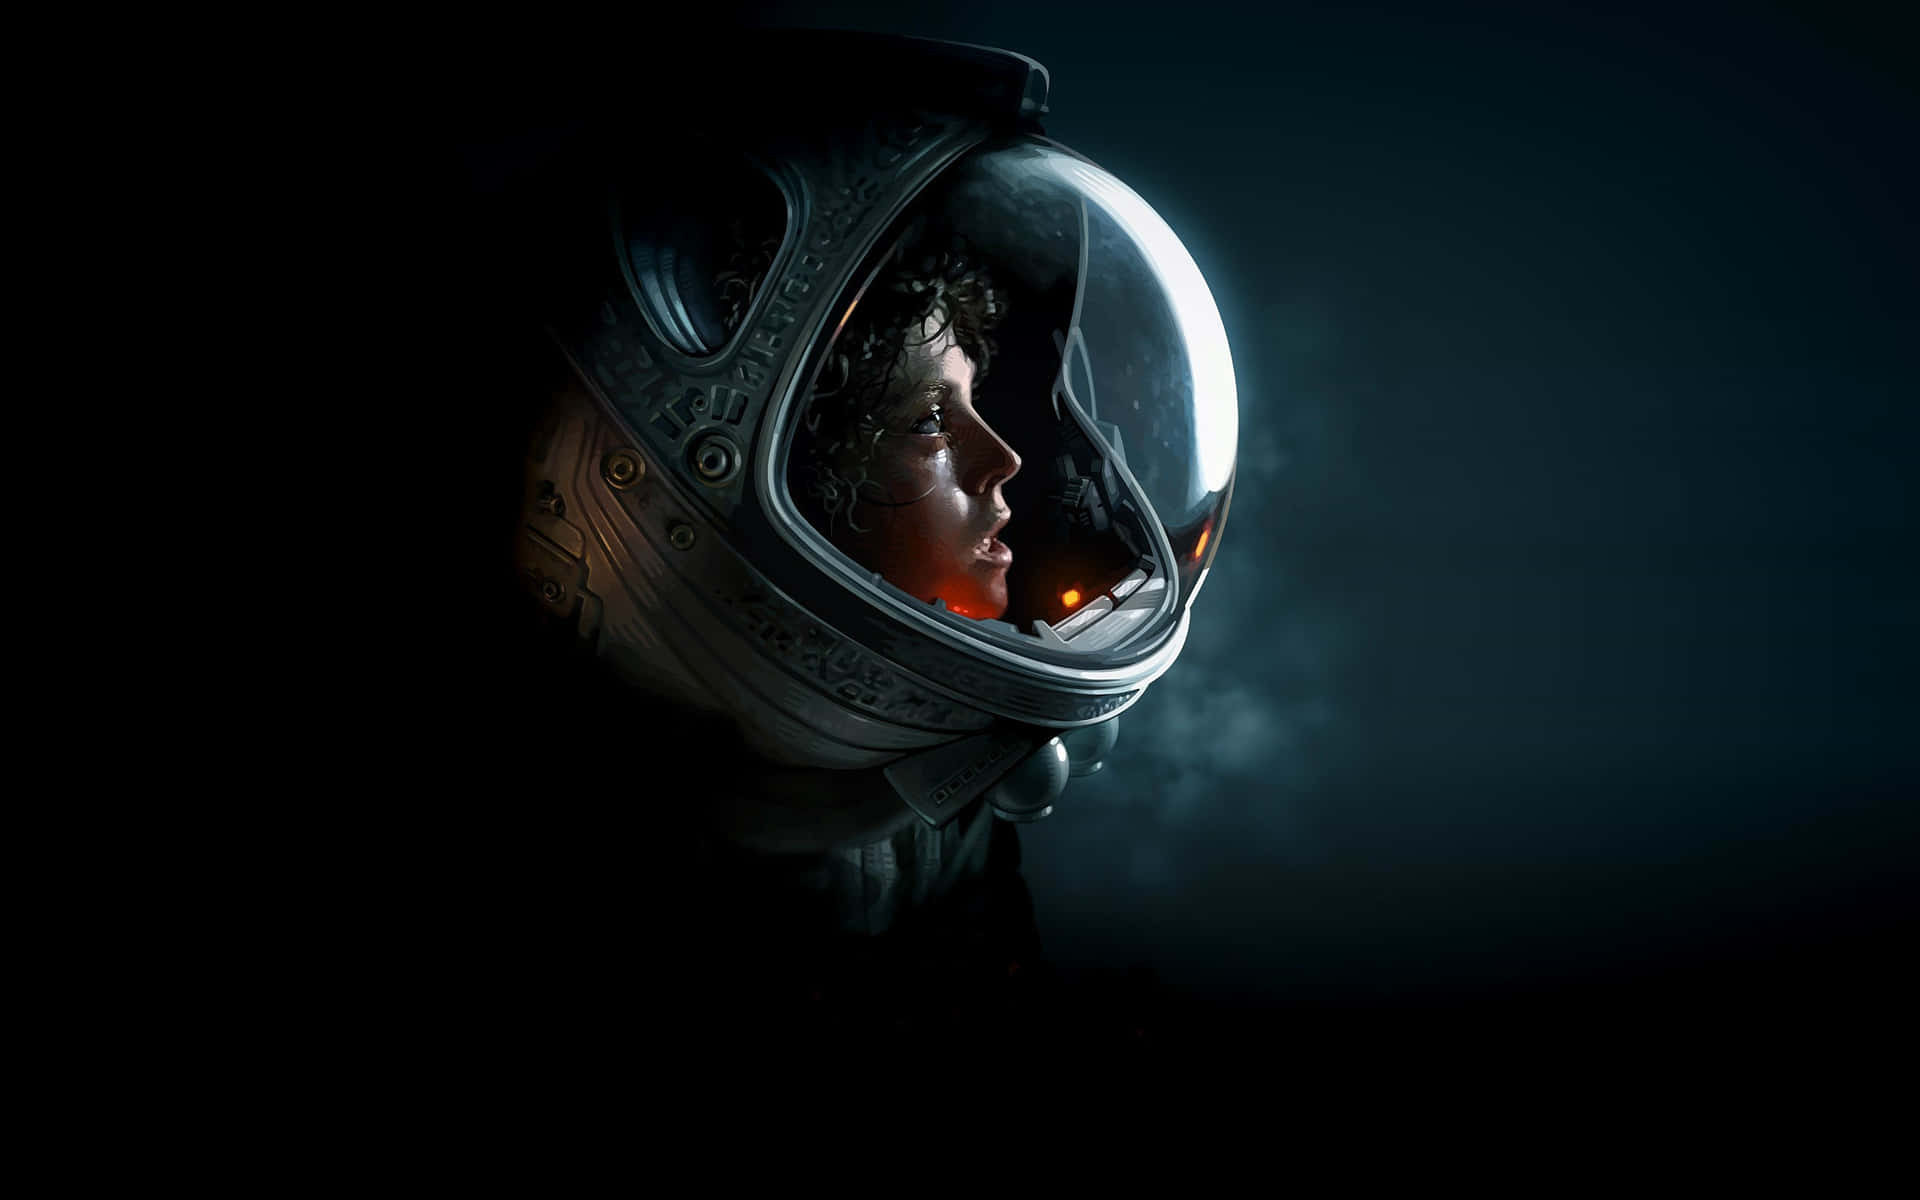 Astronaut Profilein Space Helmet Wallpaper